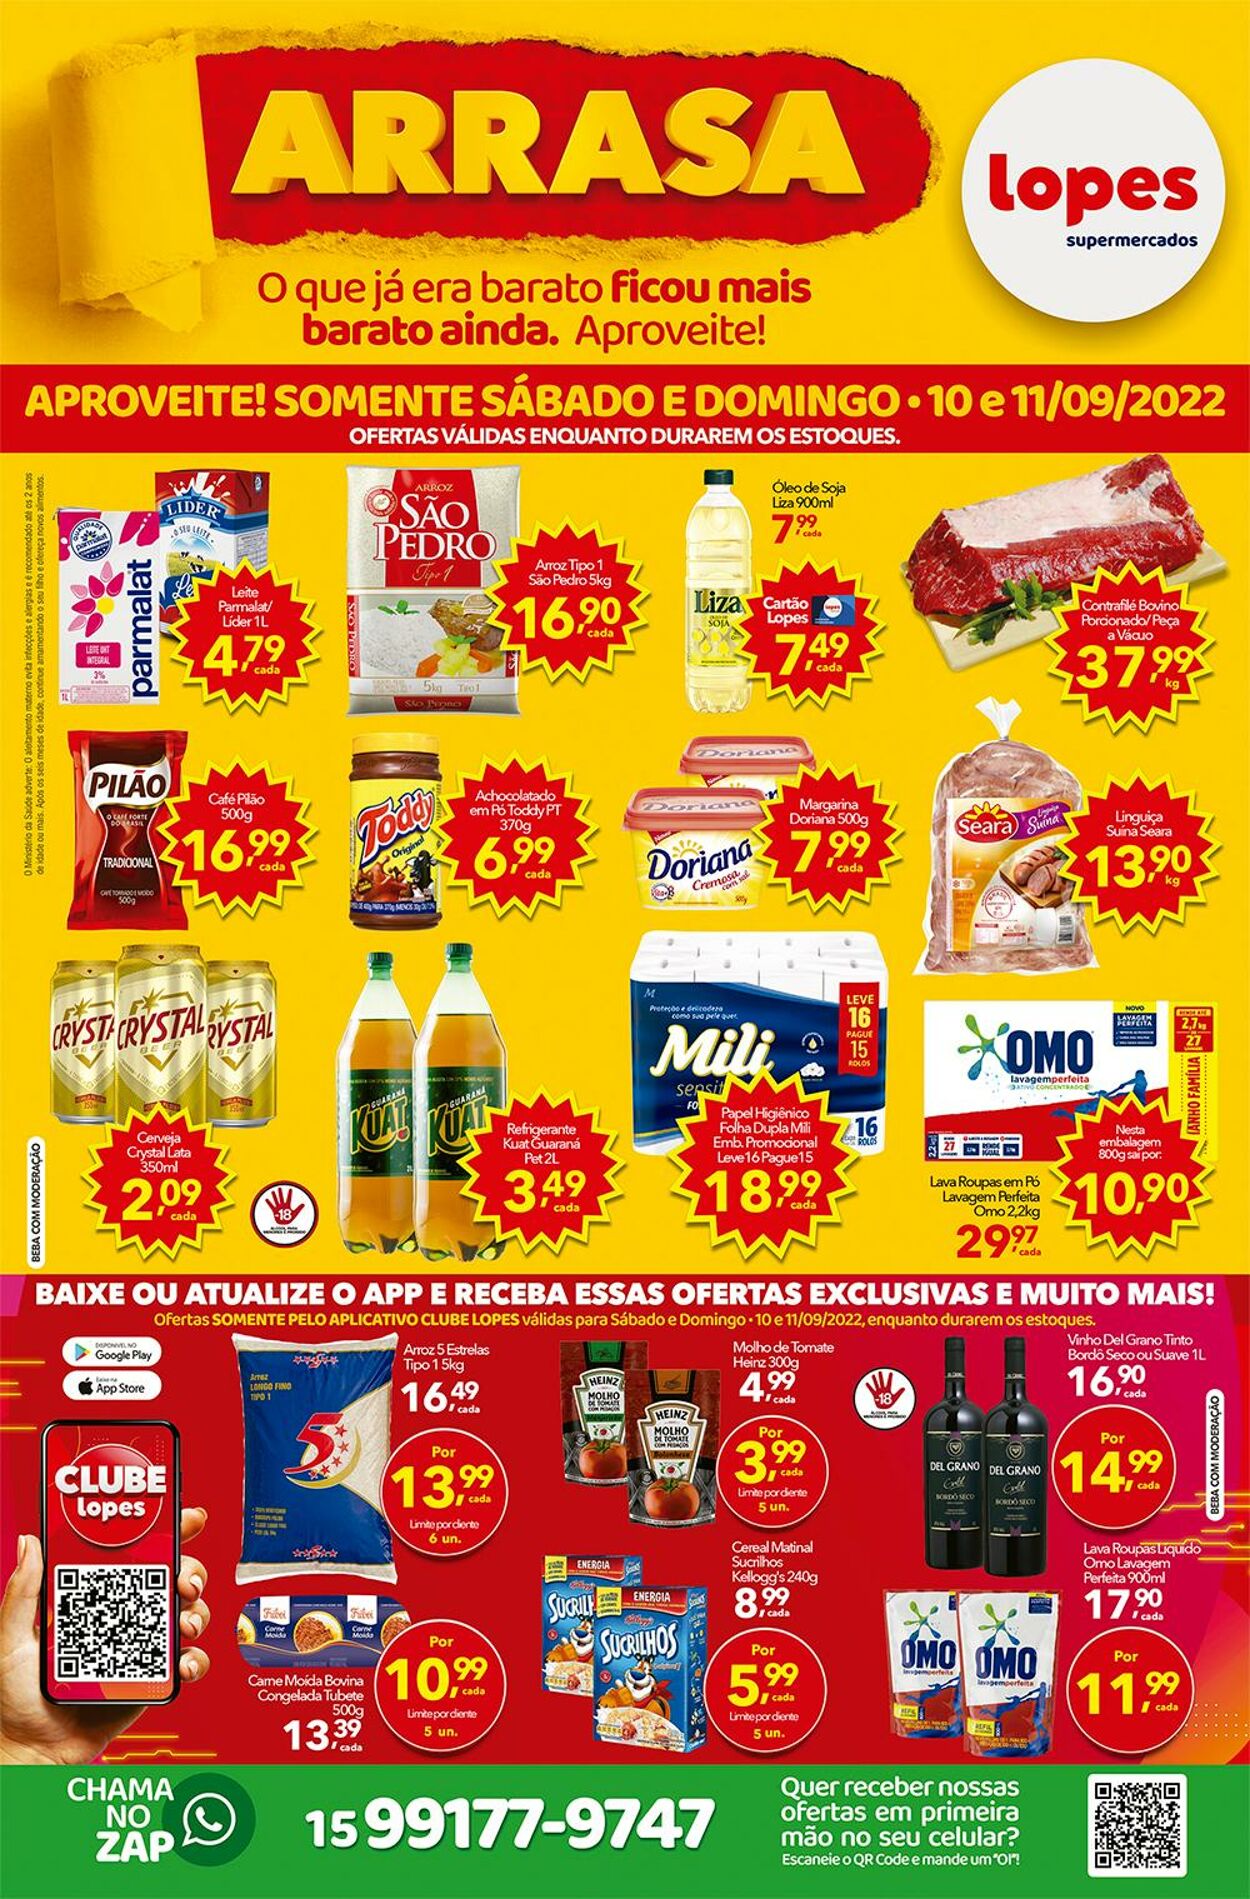 Folheto Lopes Supermercados 10.09.2022-13.09.2022